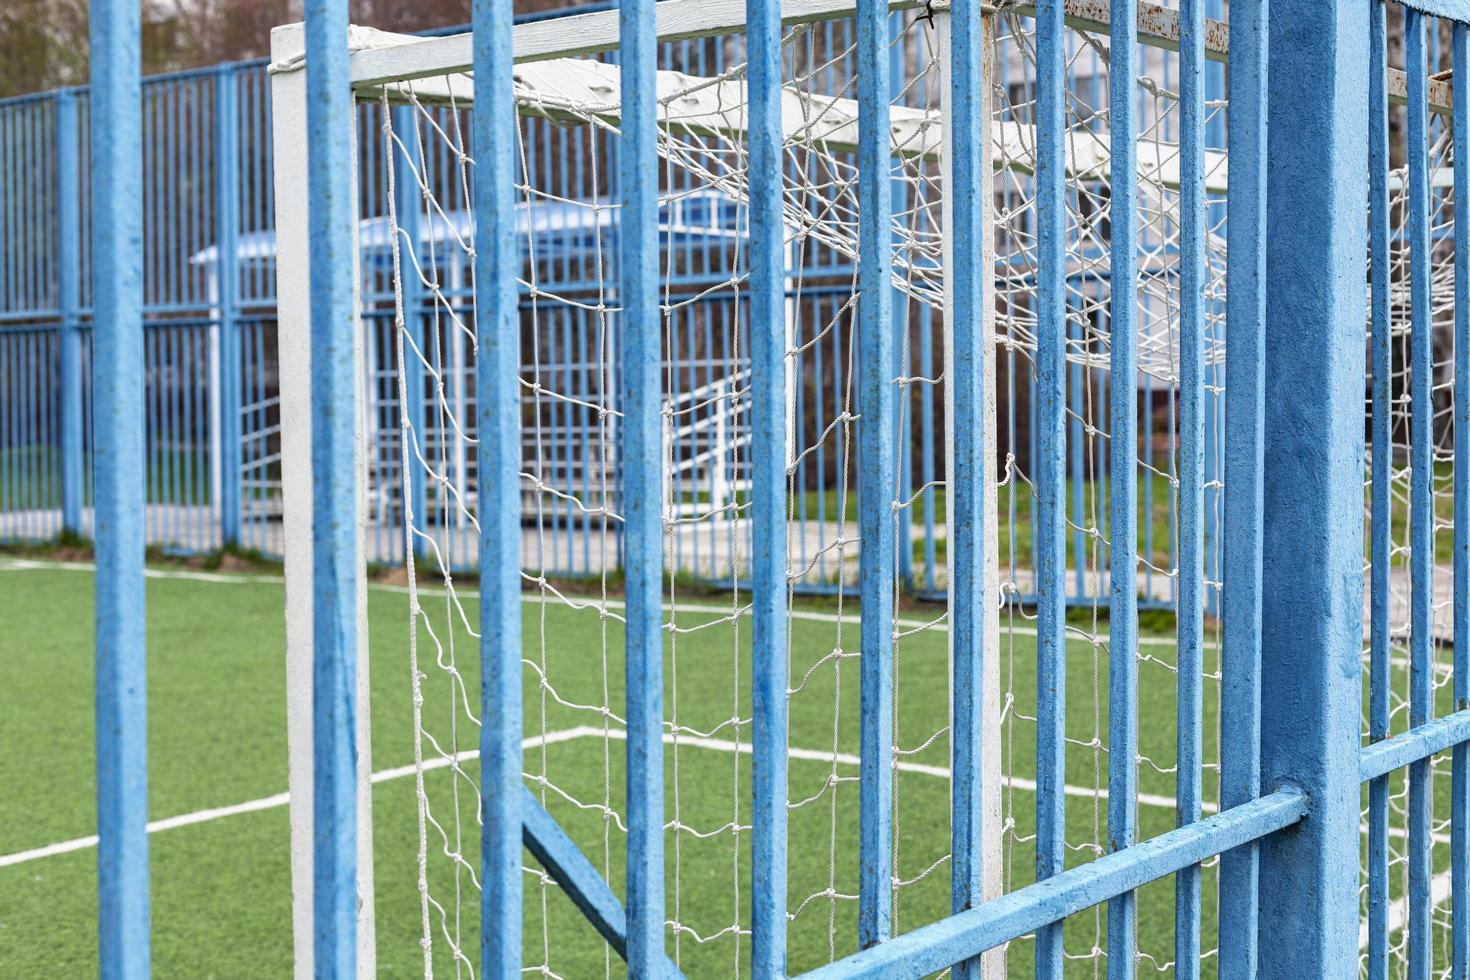 terrain de football. vue sur le terrain de football avec des buts blancs à travers la clôture bleue. concept sportif, terrain de football et but de football avec sol en herbe. photo